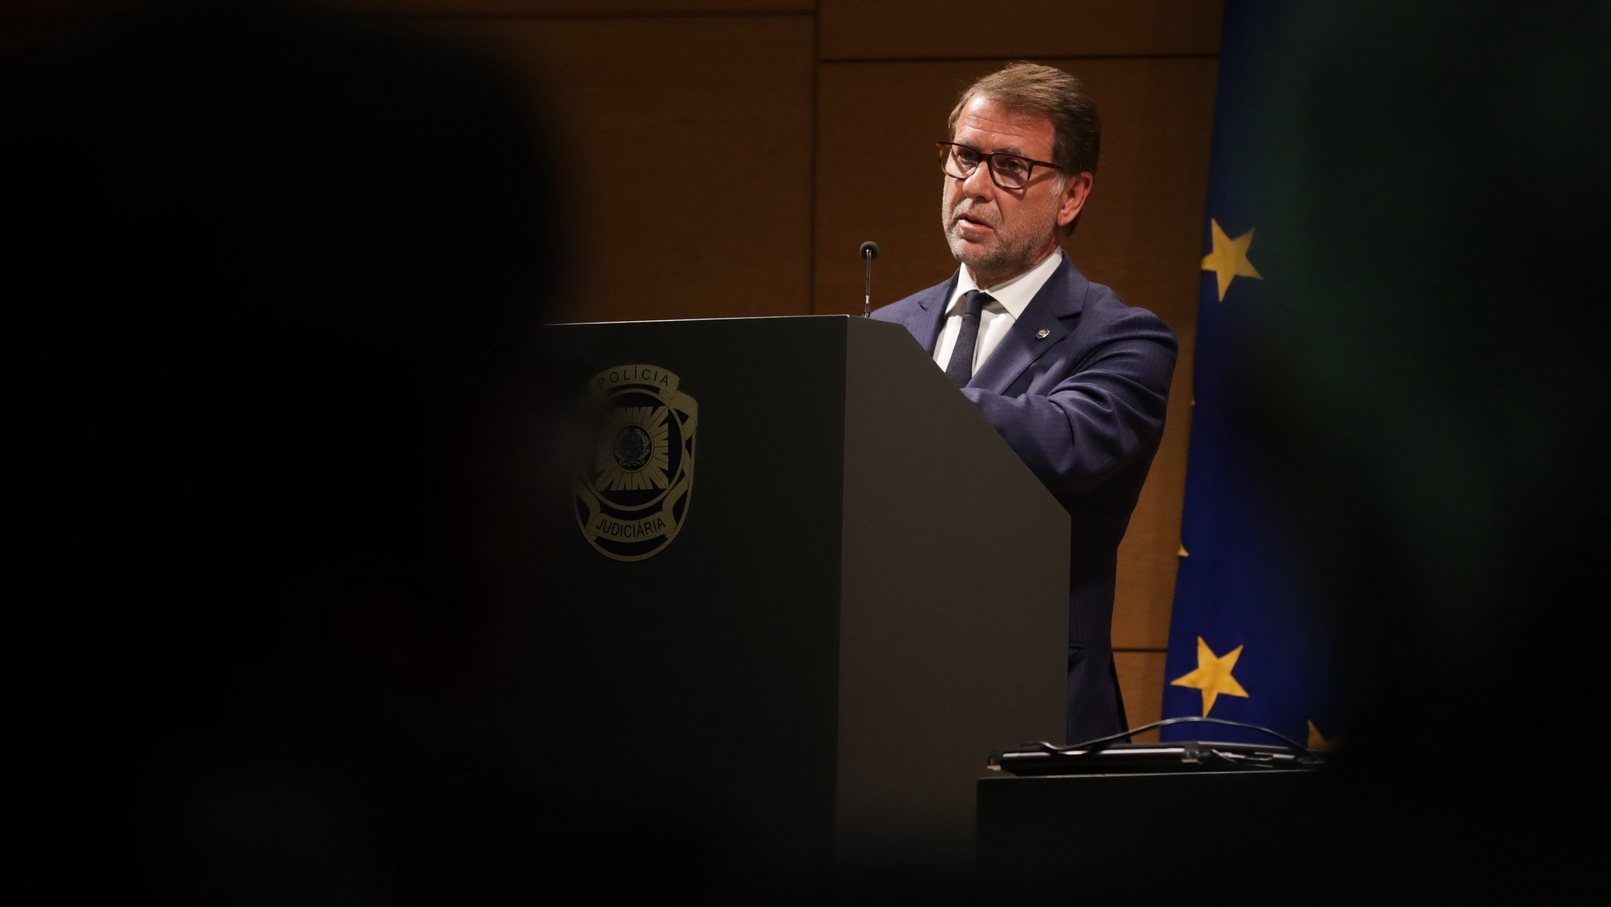 O diretor Nacional da Polícia Judiciária, Luís Neves, discursa durante a cerimónia de posse de novos diretores na sede da instituição em Lisboa, 17 de agosto de 2022.TIAGO PETINGA/LUSA